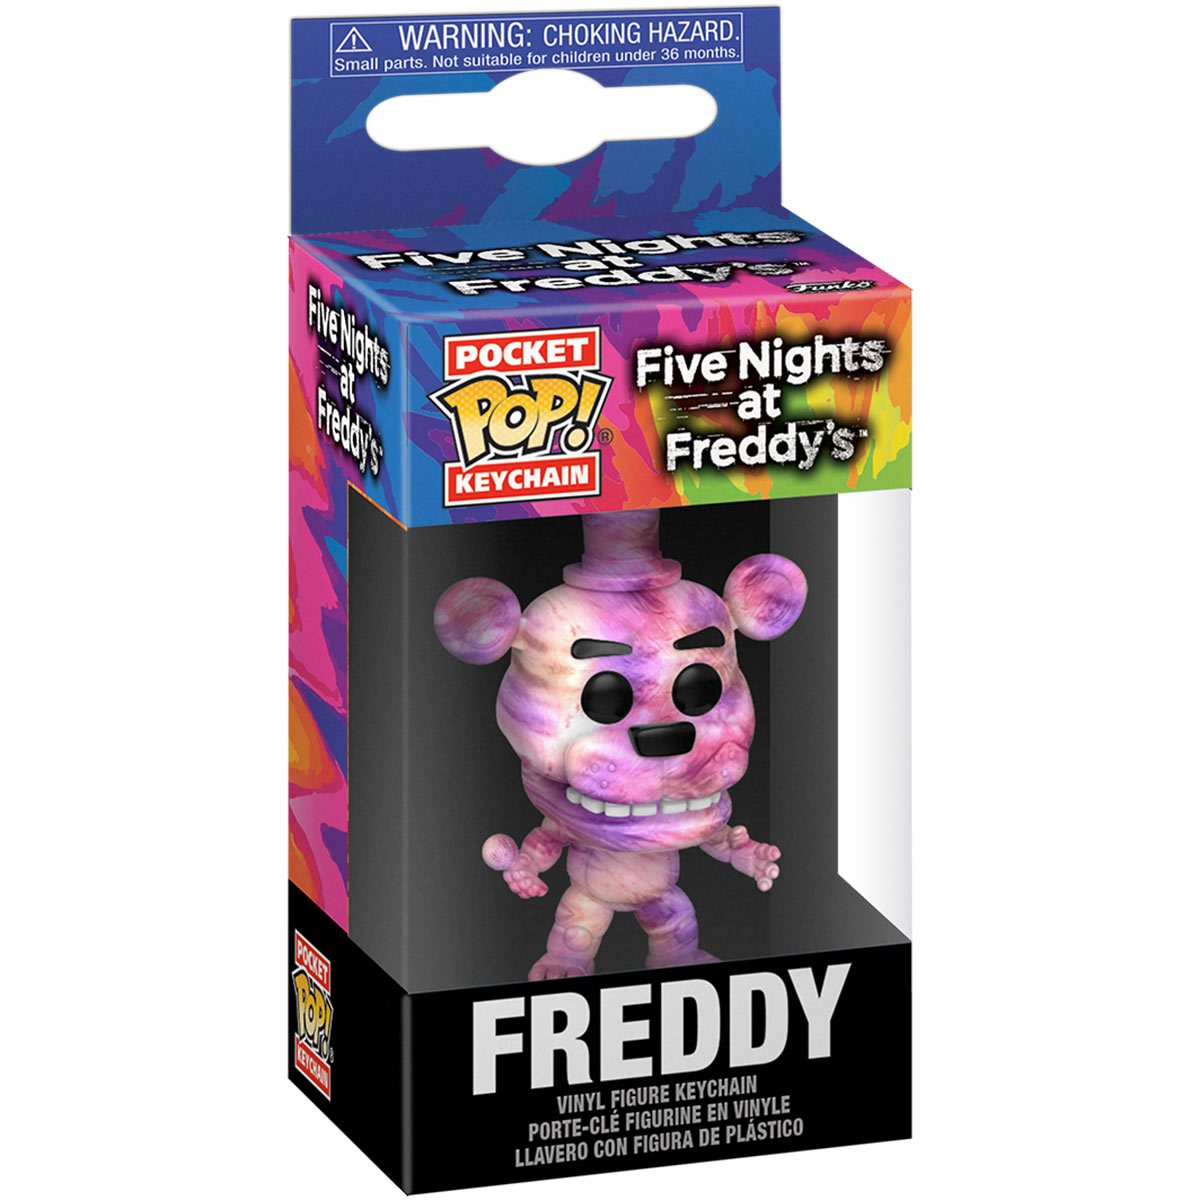 Funko Five Nights at Freddy's Funko Tie-Dye Freddy Action Figure